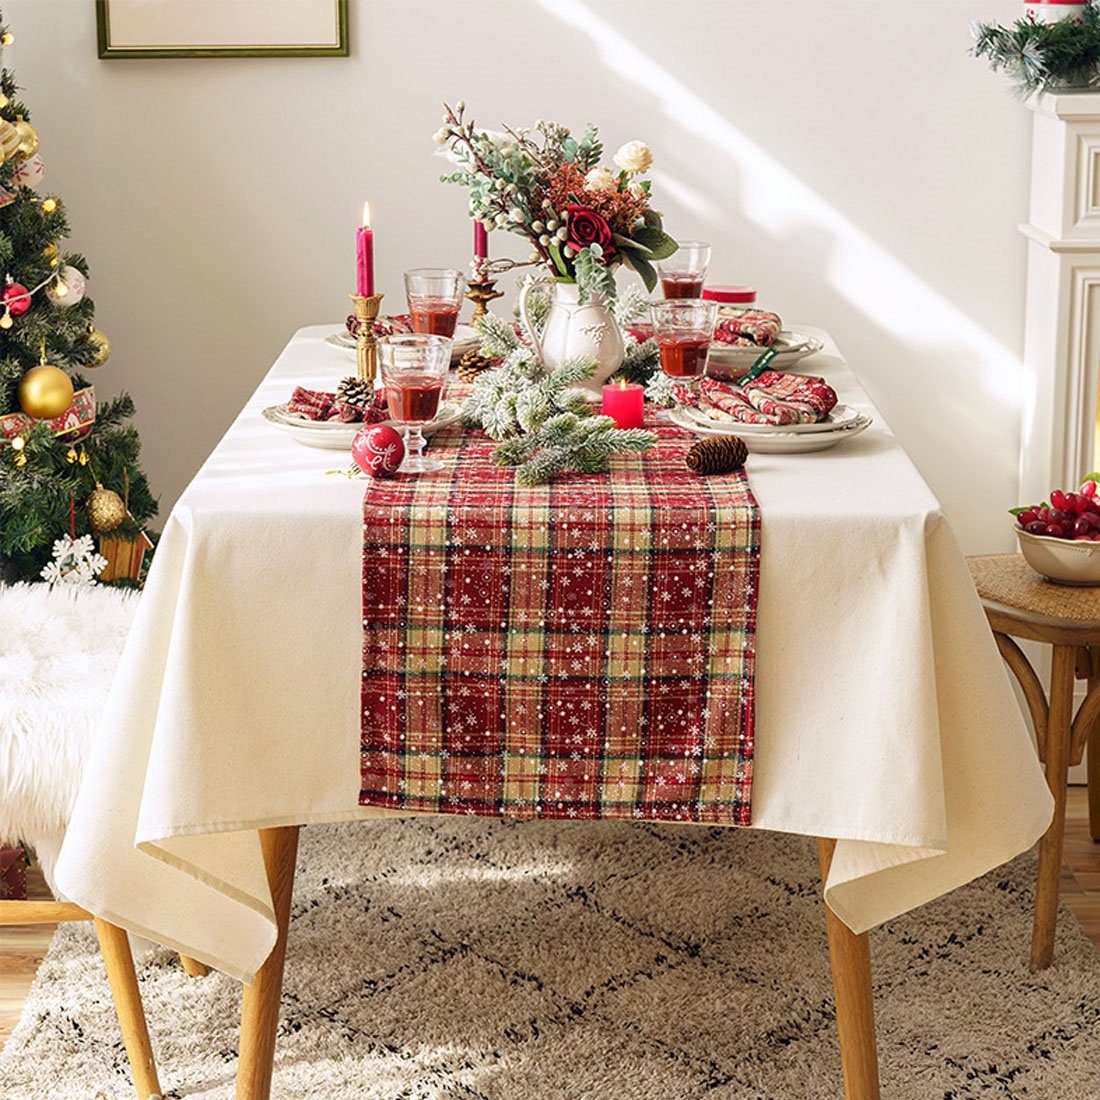 DÖRÖY Tischläufer 40*220cm Tischläufer, bedruckter Tischfahnen festliche Weihnachtsdekoration